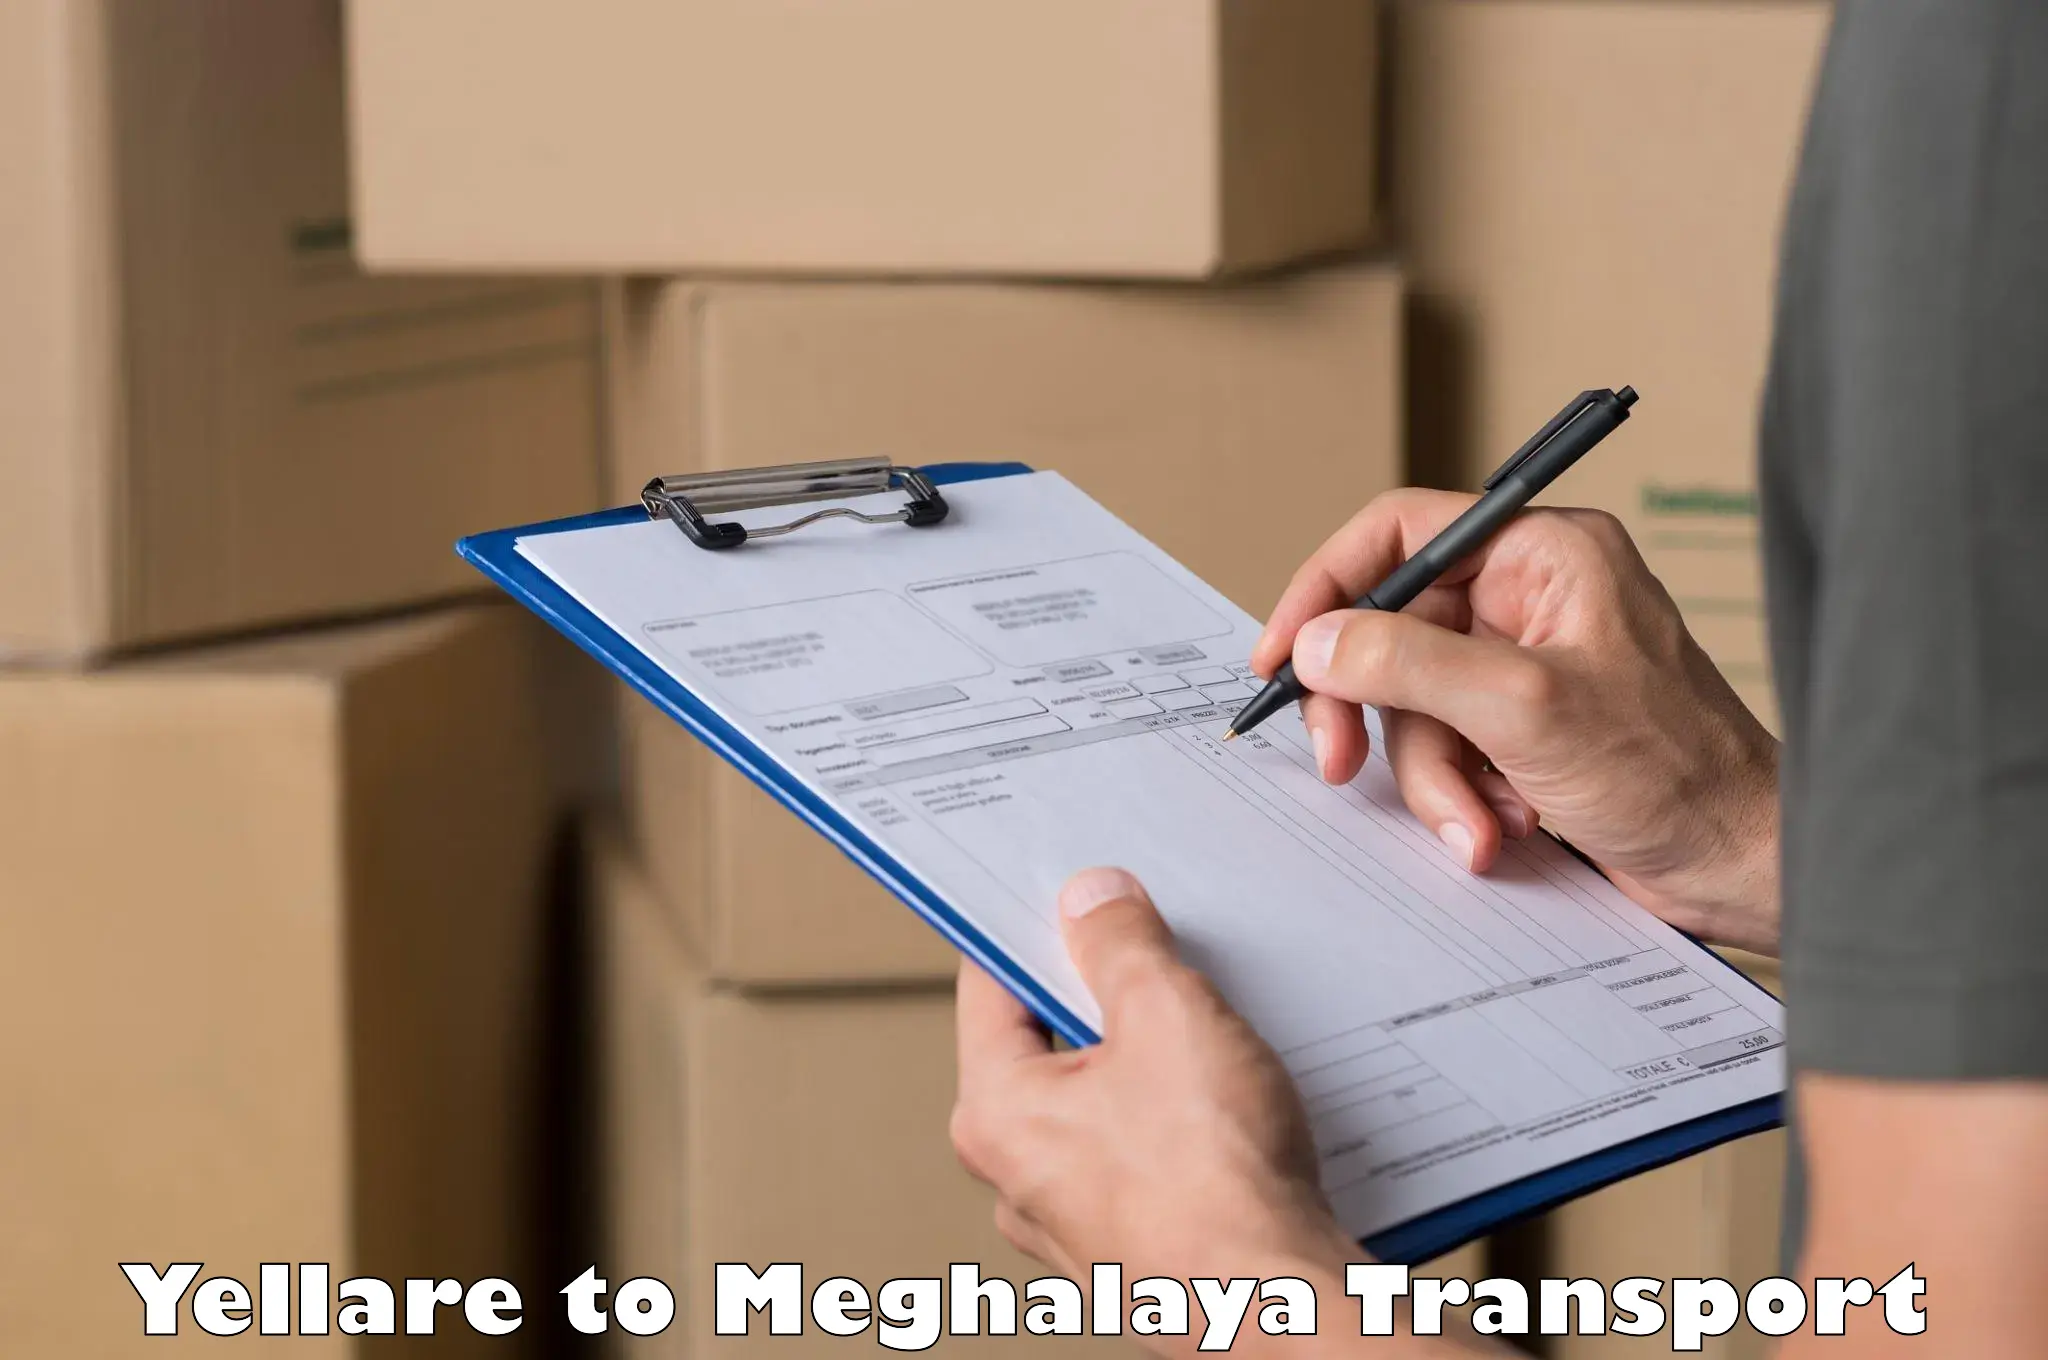 Transport in sharing Yellare to Meghalaya